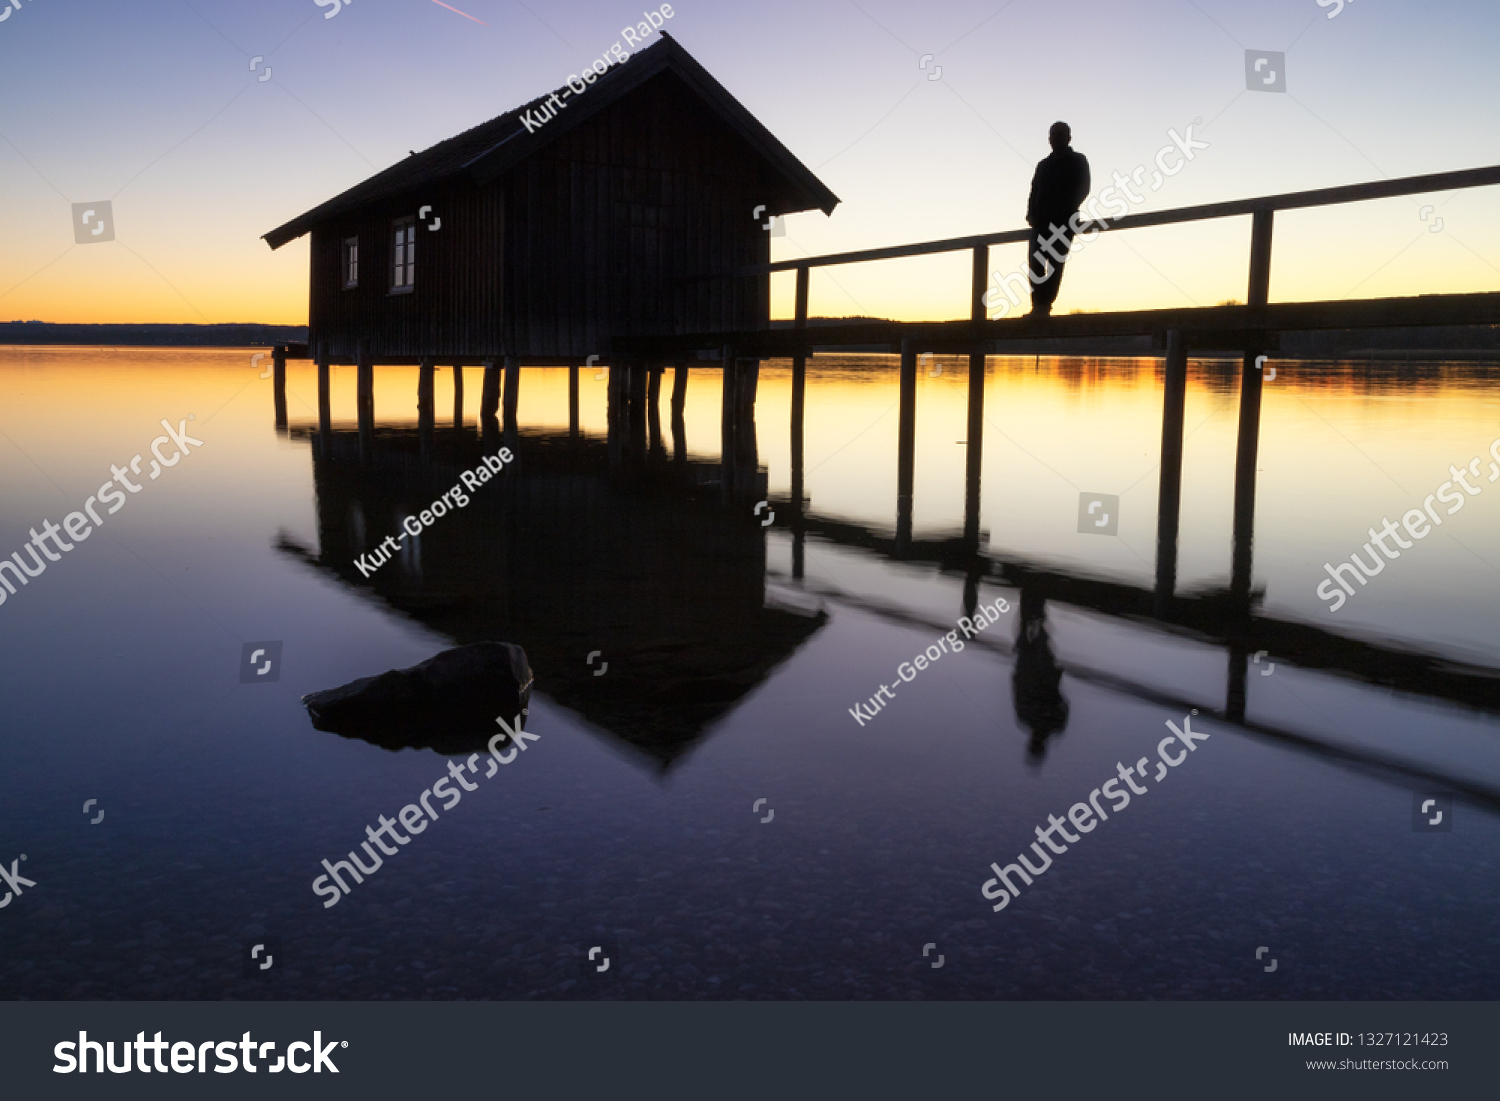 A boatshouse at a lake at sunset #1327121423